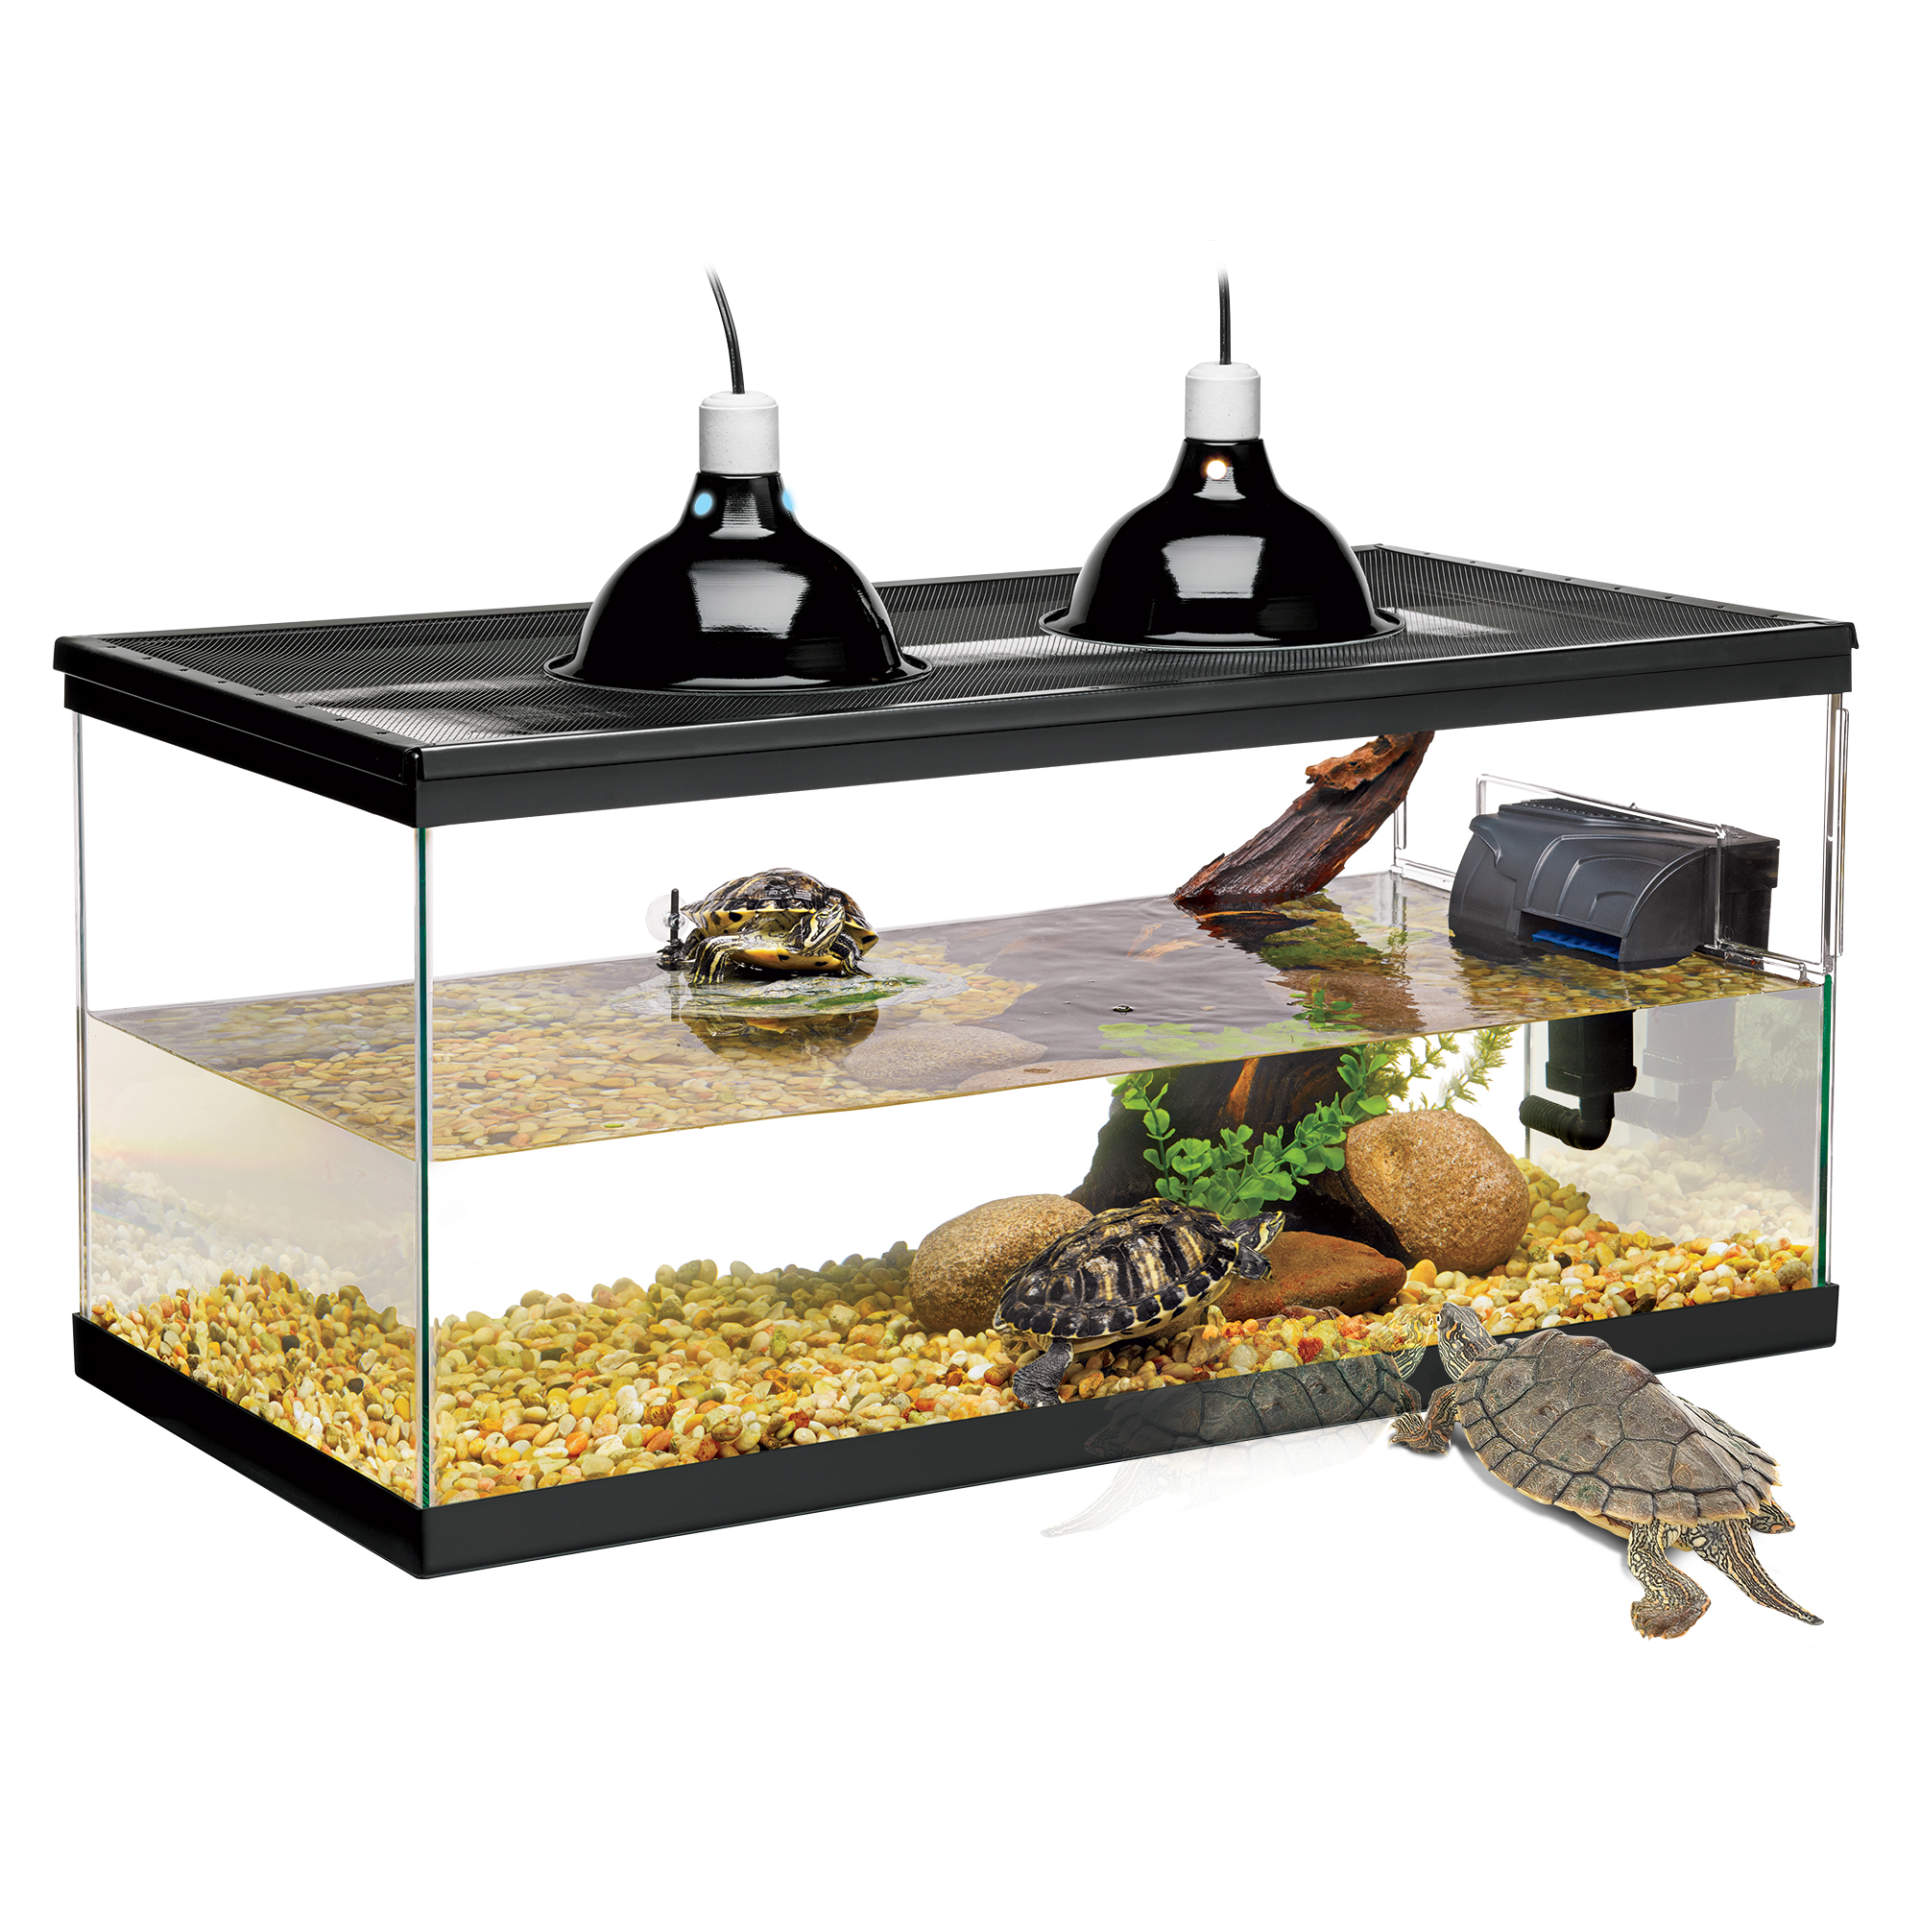 Deluxe Aquatic Turtle Kit, Aquarium Kit